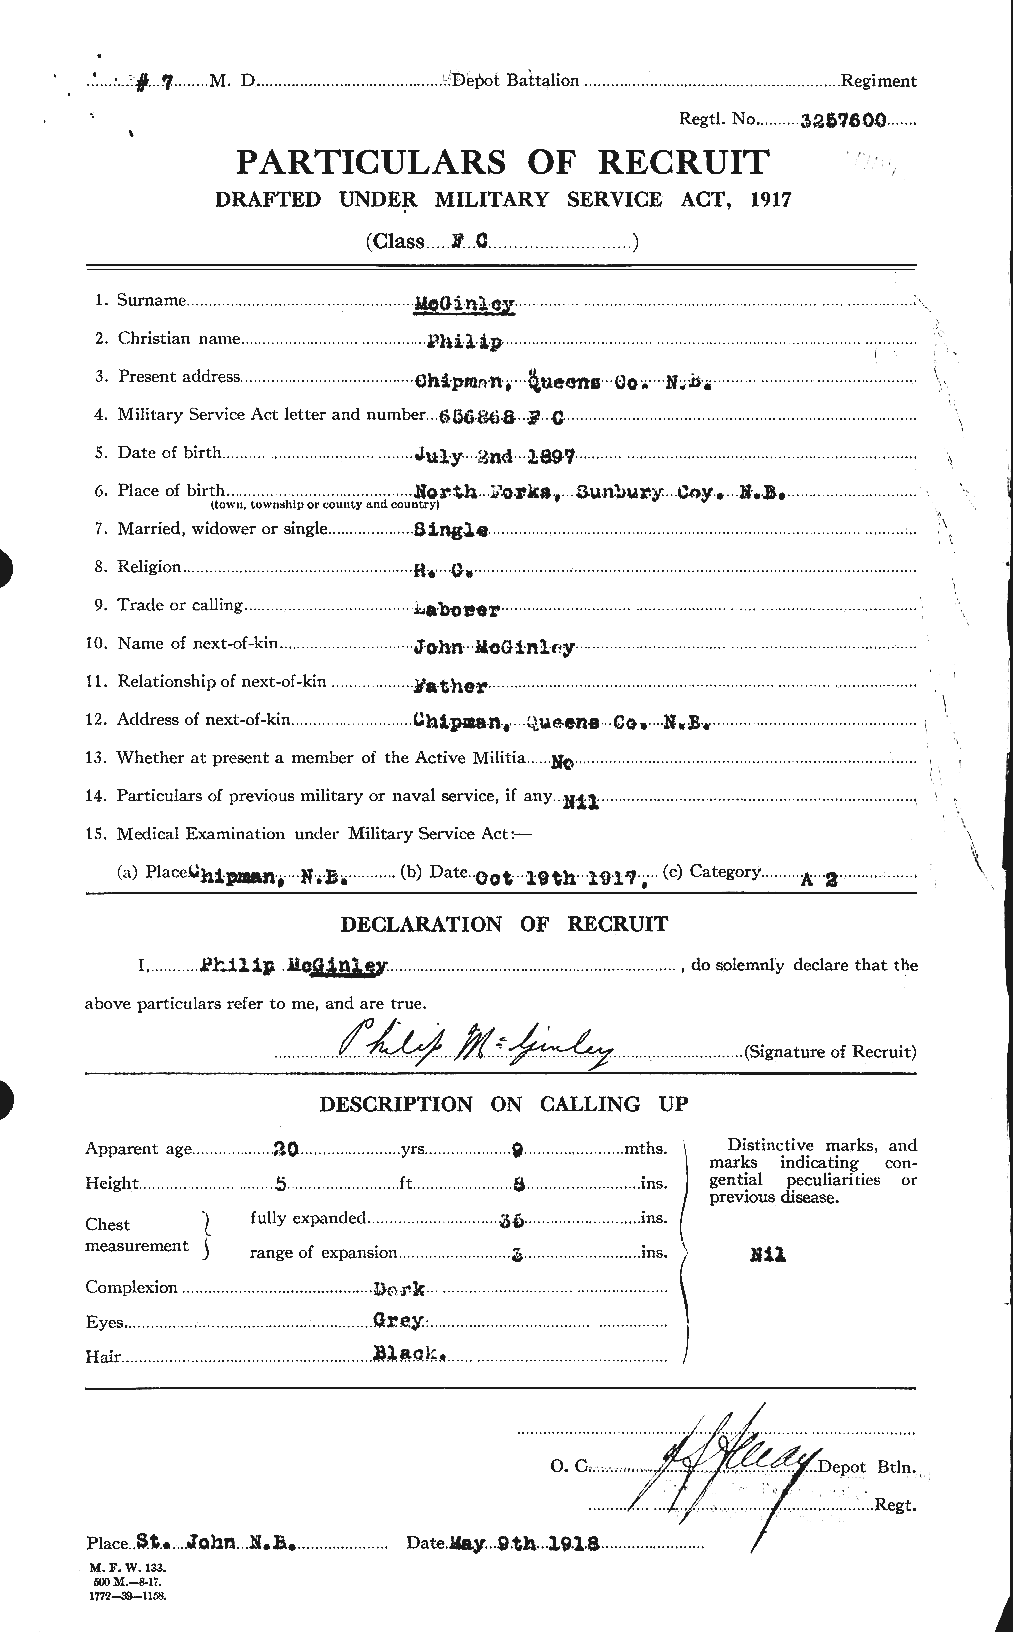 Dossiers du Personnel de la Première Guerre mondiale - CEC 526328a